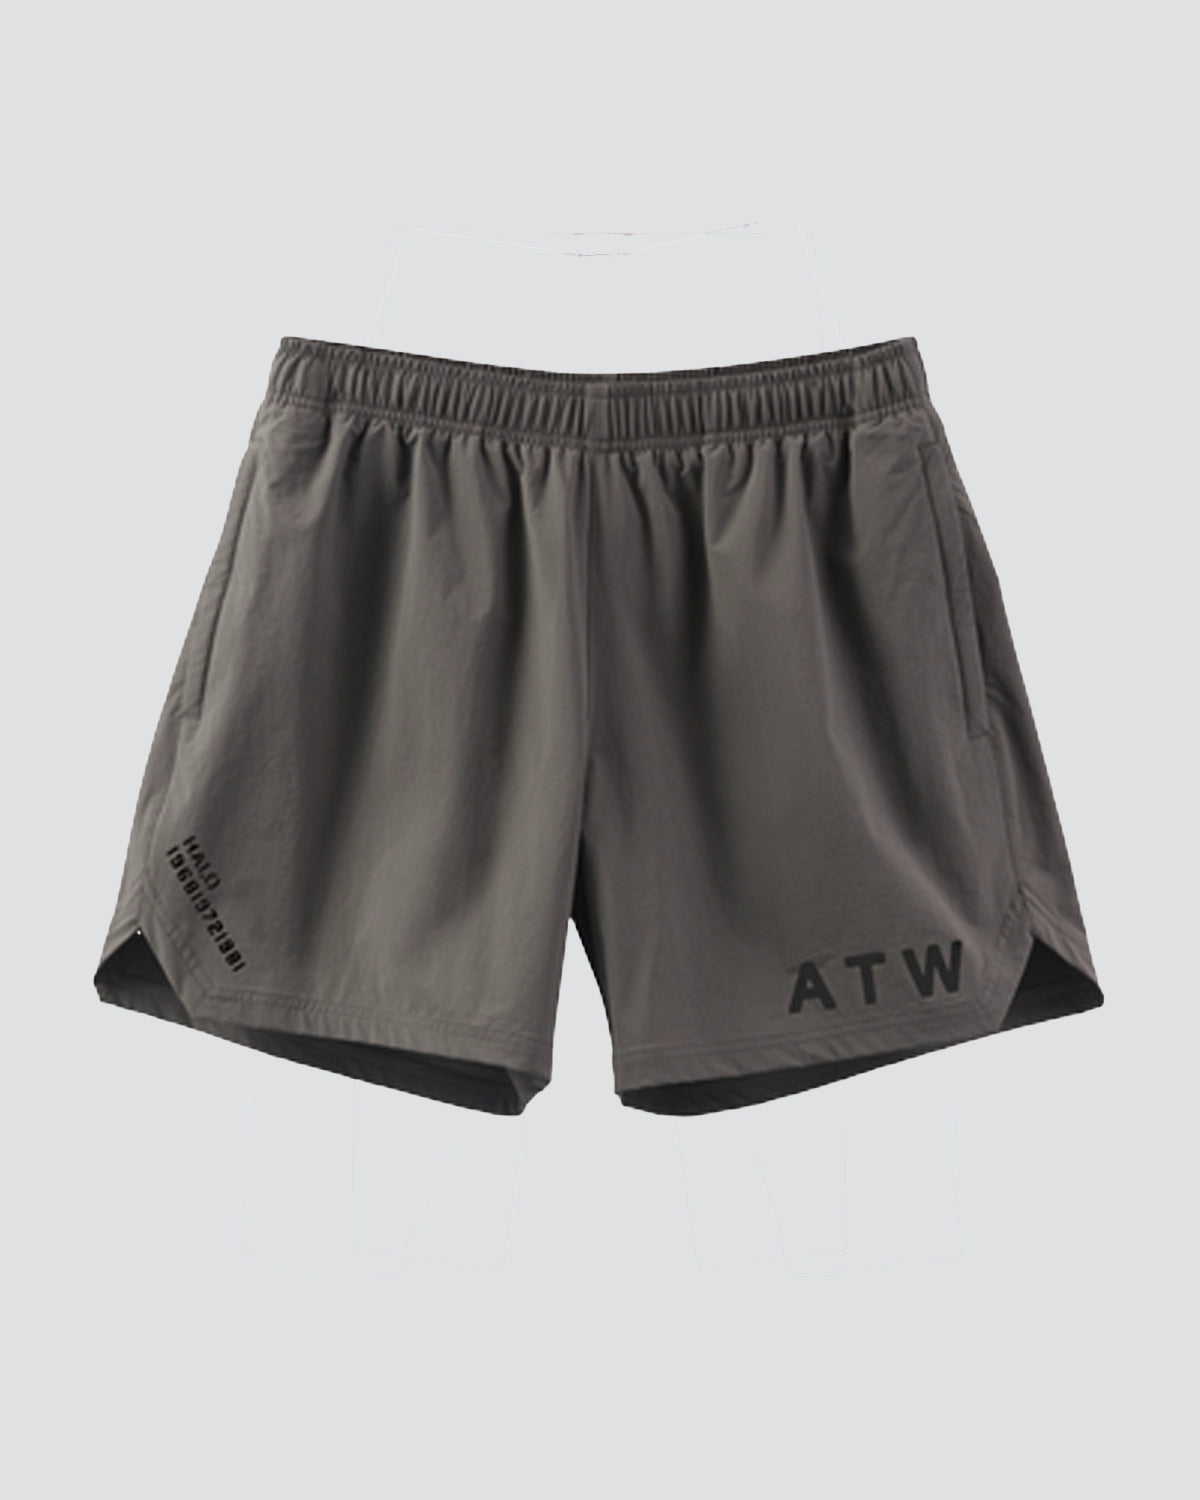 Halo ATW Shorts